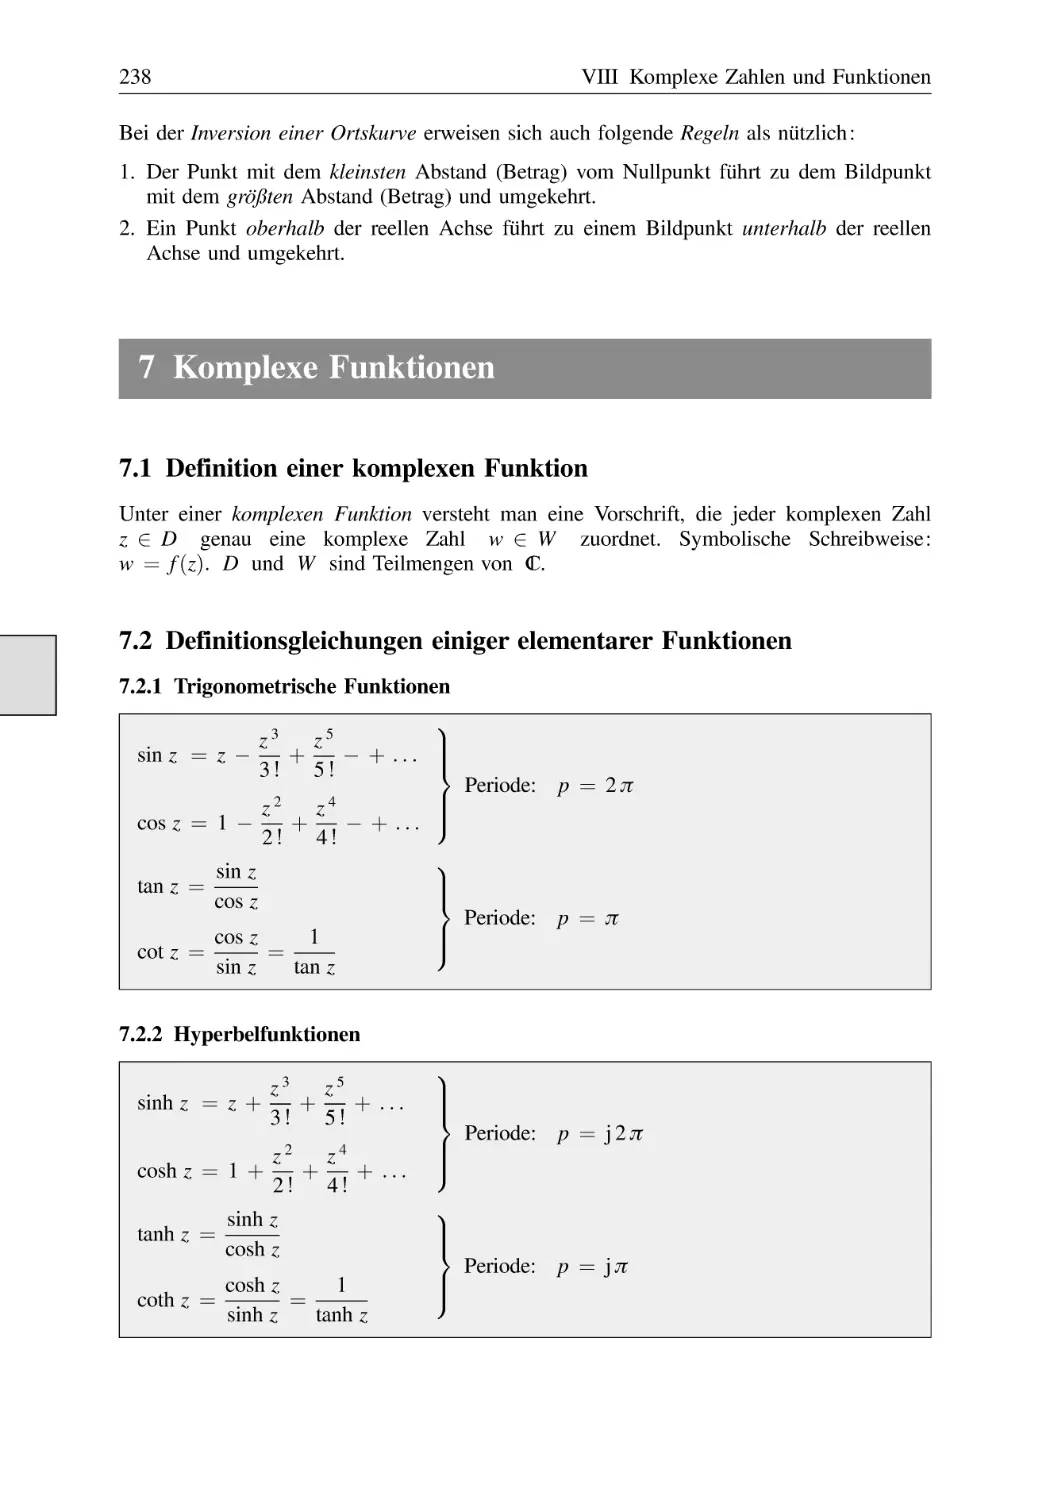 7 Komplexe Funktionen
7.1 Definition einer komplexen Funktion
7.2 Definitionsgleichungen einiger elementarer Funktionen
7.2.1 Trigonometrische Funktionen
7.2.2 Hyperbelfunktionen